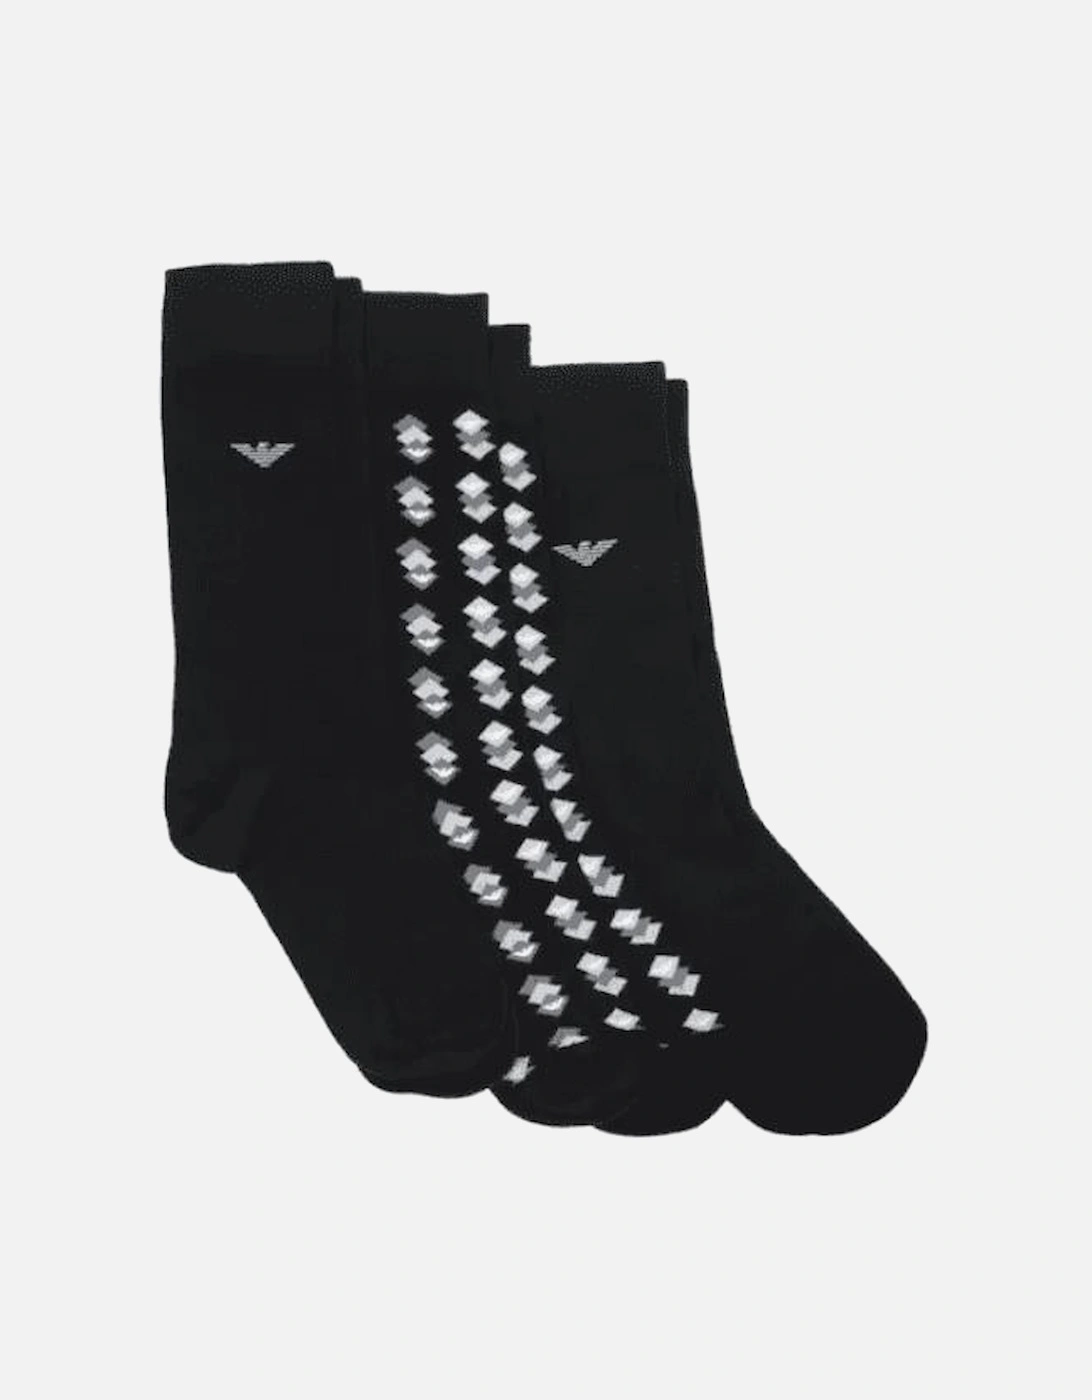 3 Pack Socks In Black Gift Set, 2 of 1